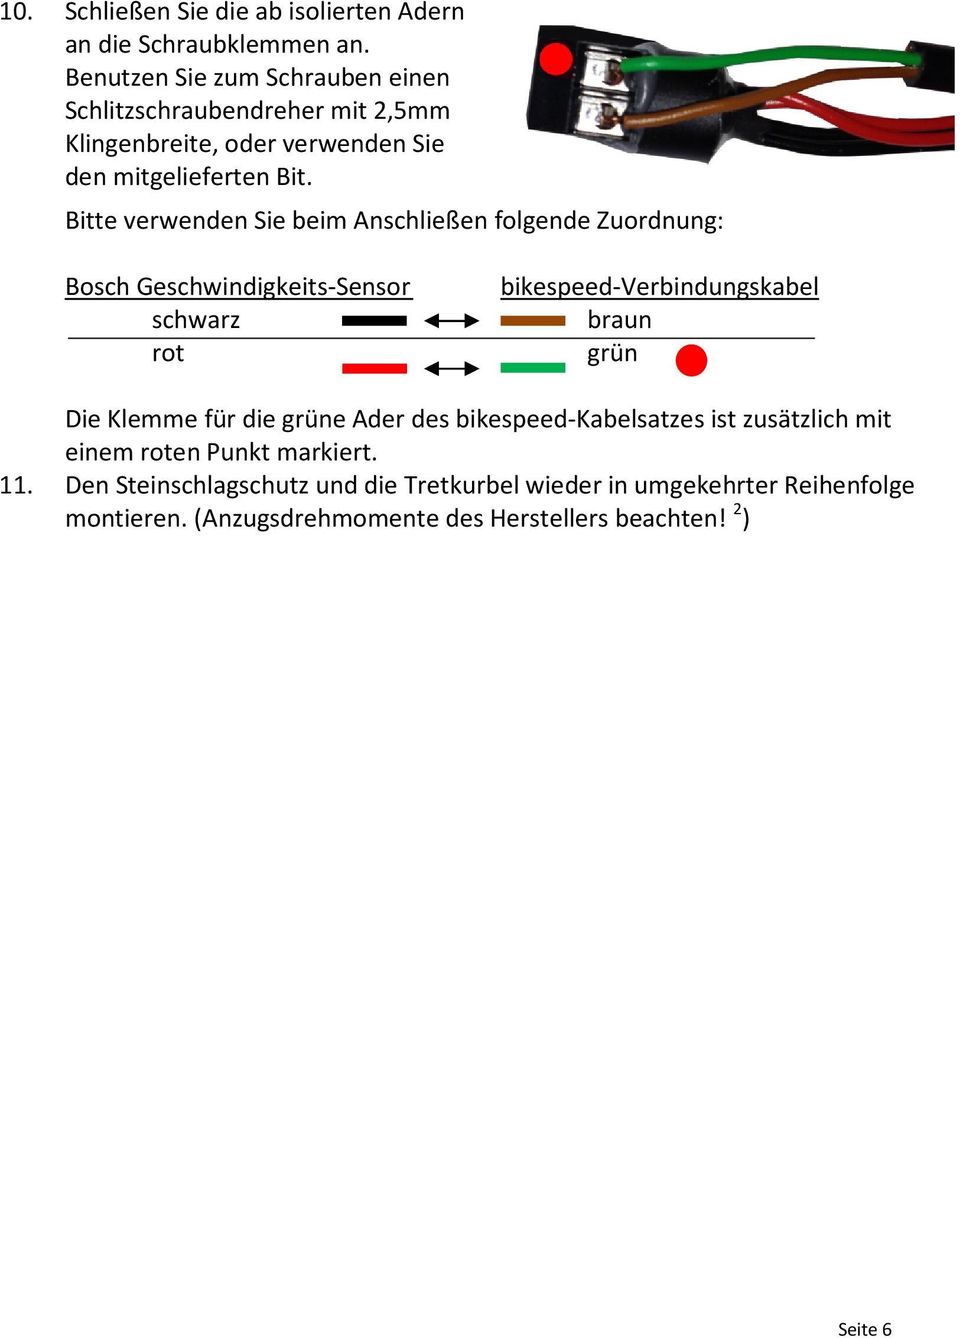 Bitte verwenden Sie beim Anschließen folgende Zuordnung: Bosch Geschwindigkeits-Sensor schwarz rot bikespeed-verbindungskabel braun grün Die